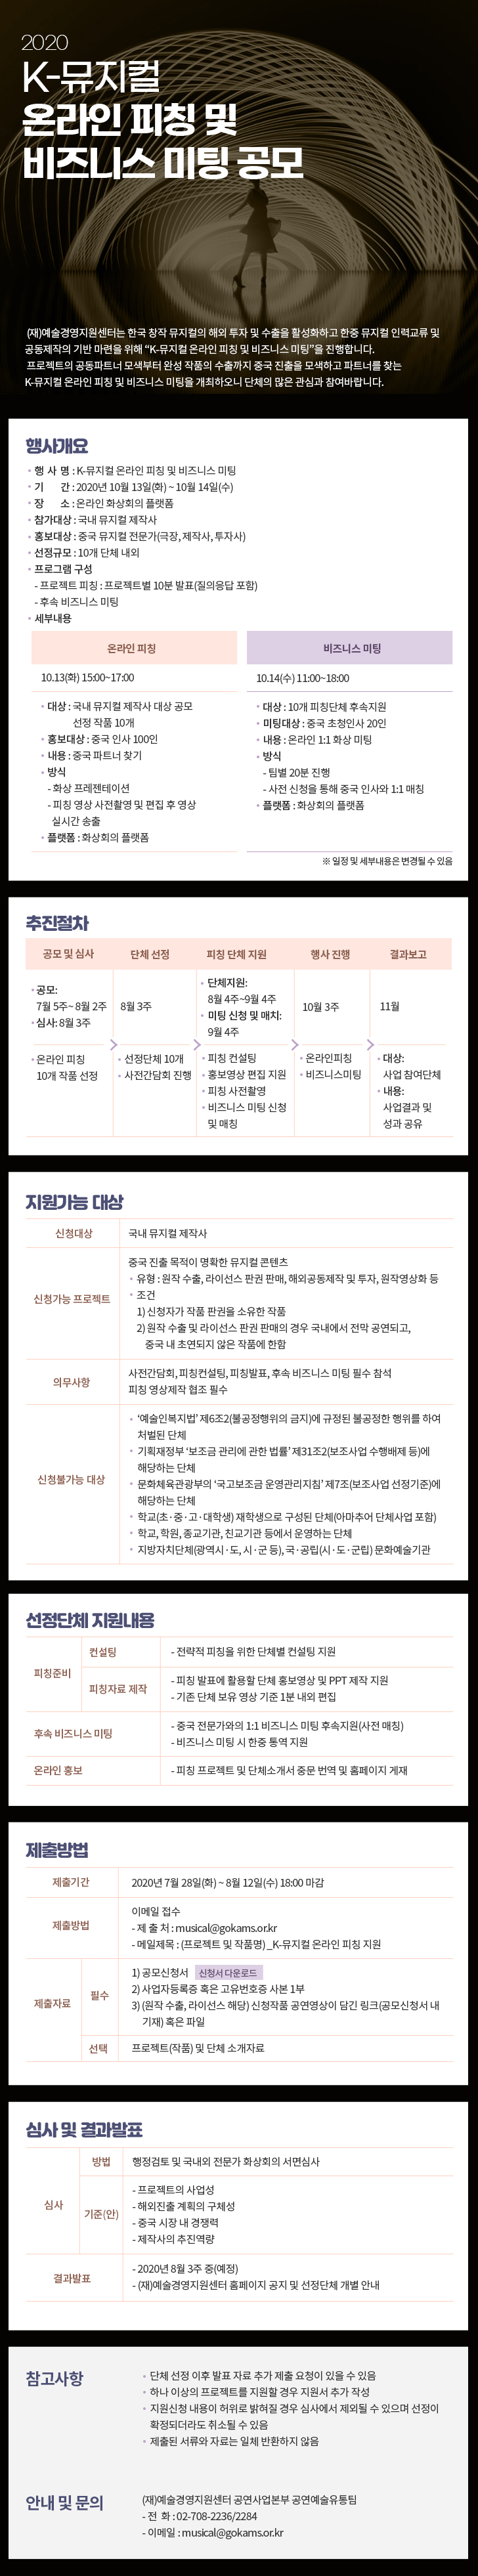 [예술경영지원센터]2020 K-뮤지컬 온라인 피칭 및 비즈니스 미팅 공모